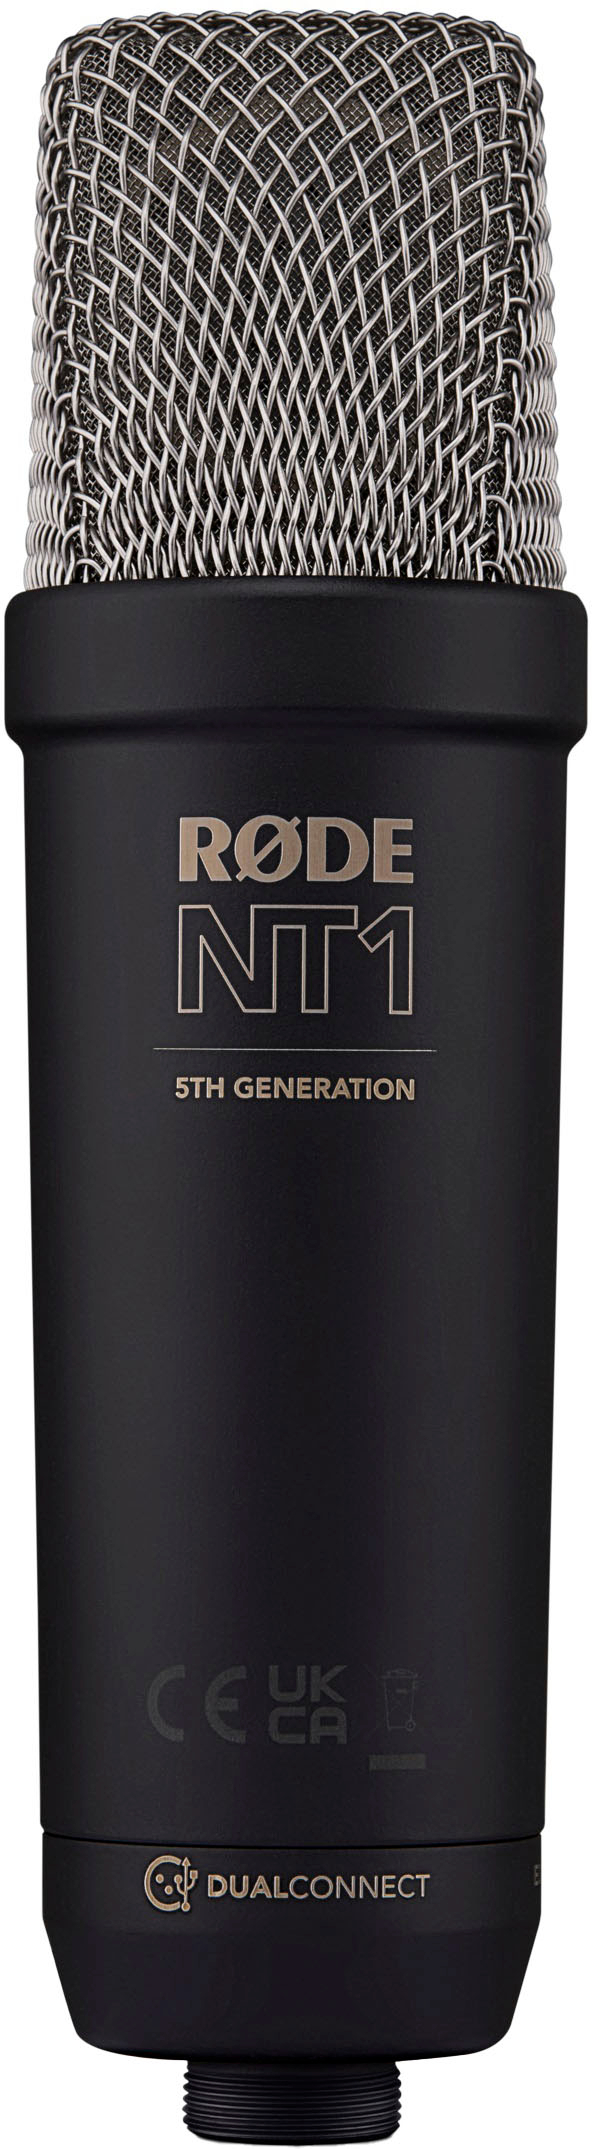 Rode NT1 5th Gen